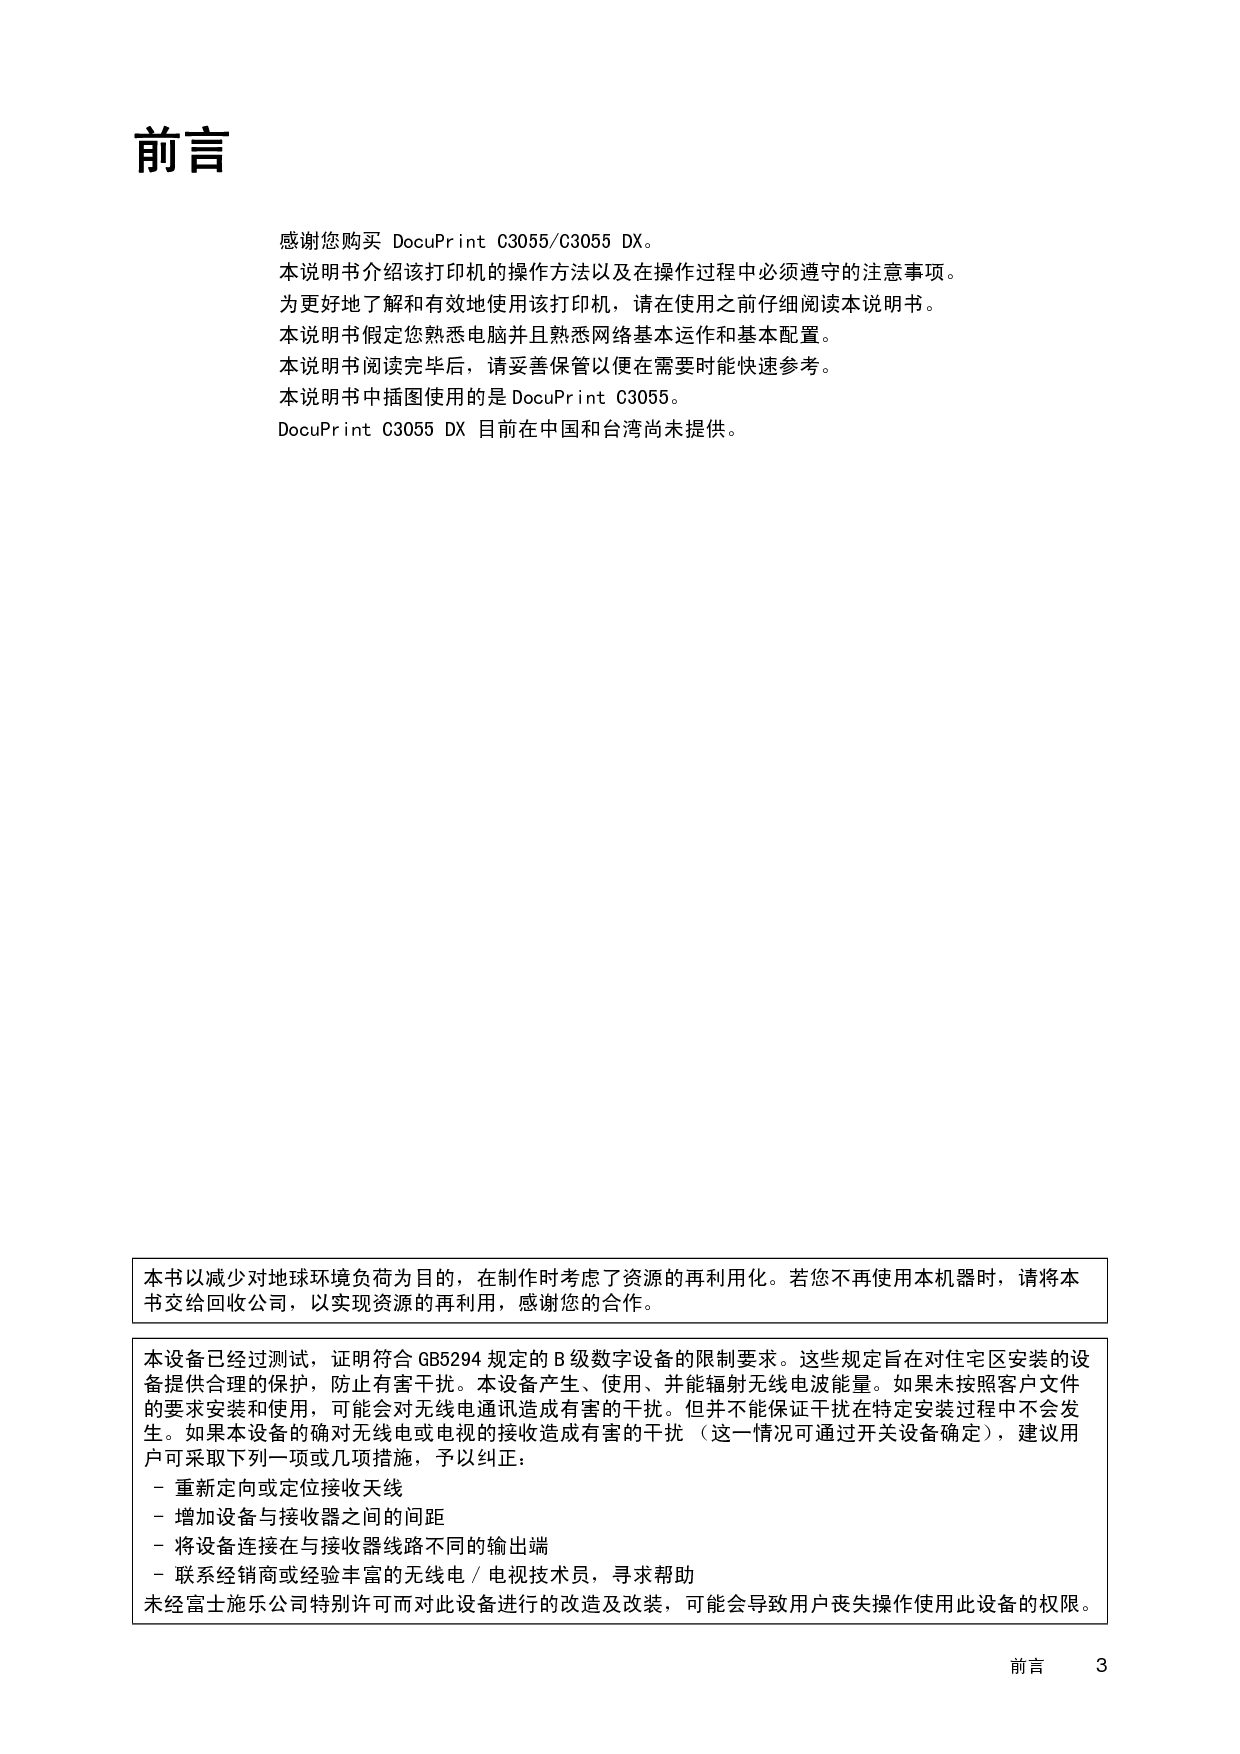 富士施乐 Fuji Xerox DocuPrint C3055 使用说明书 第2页